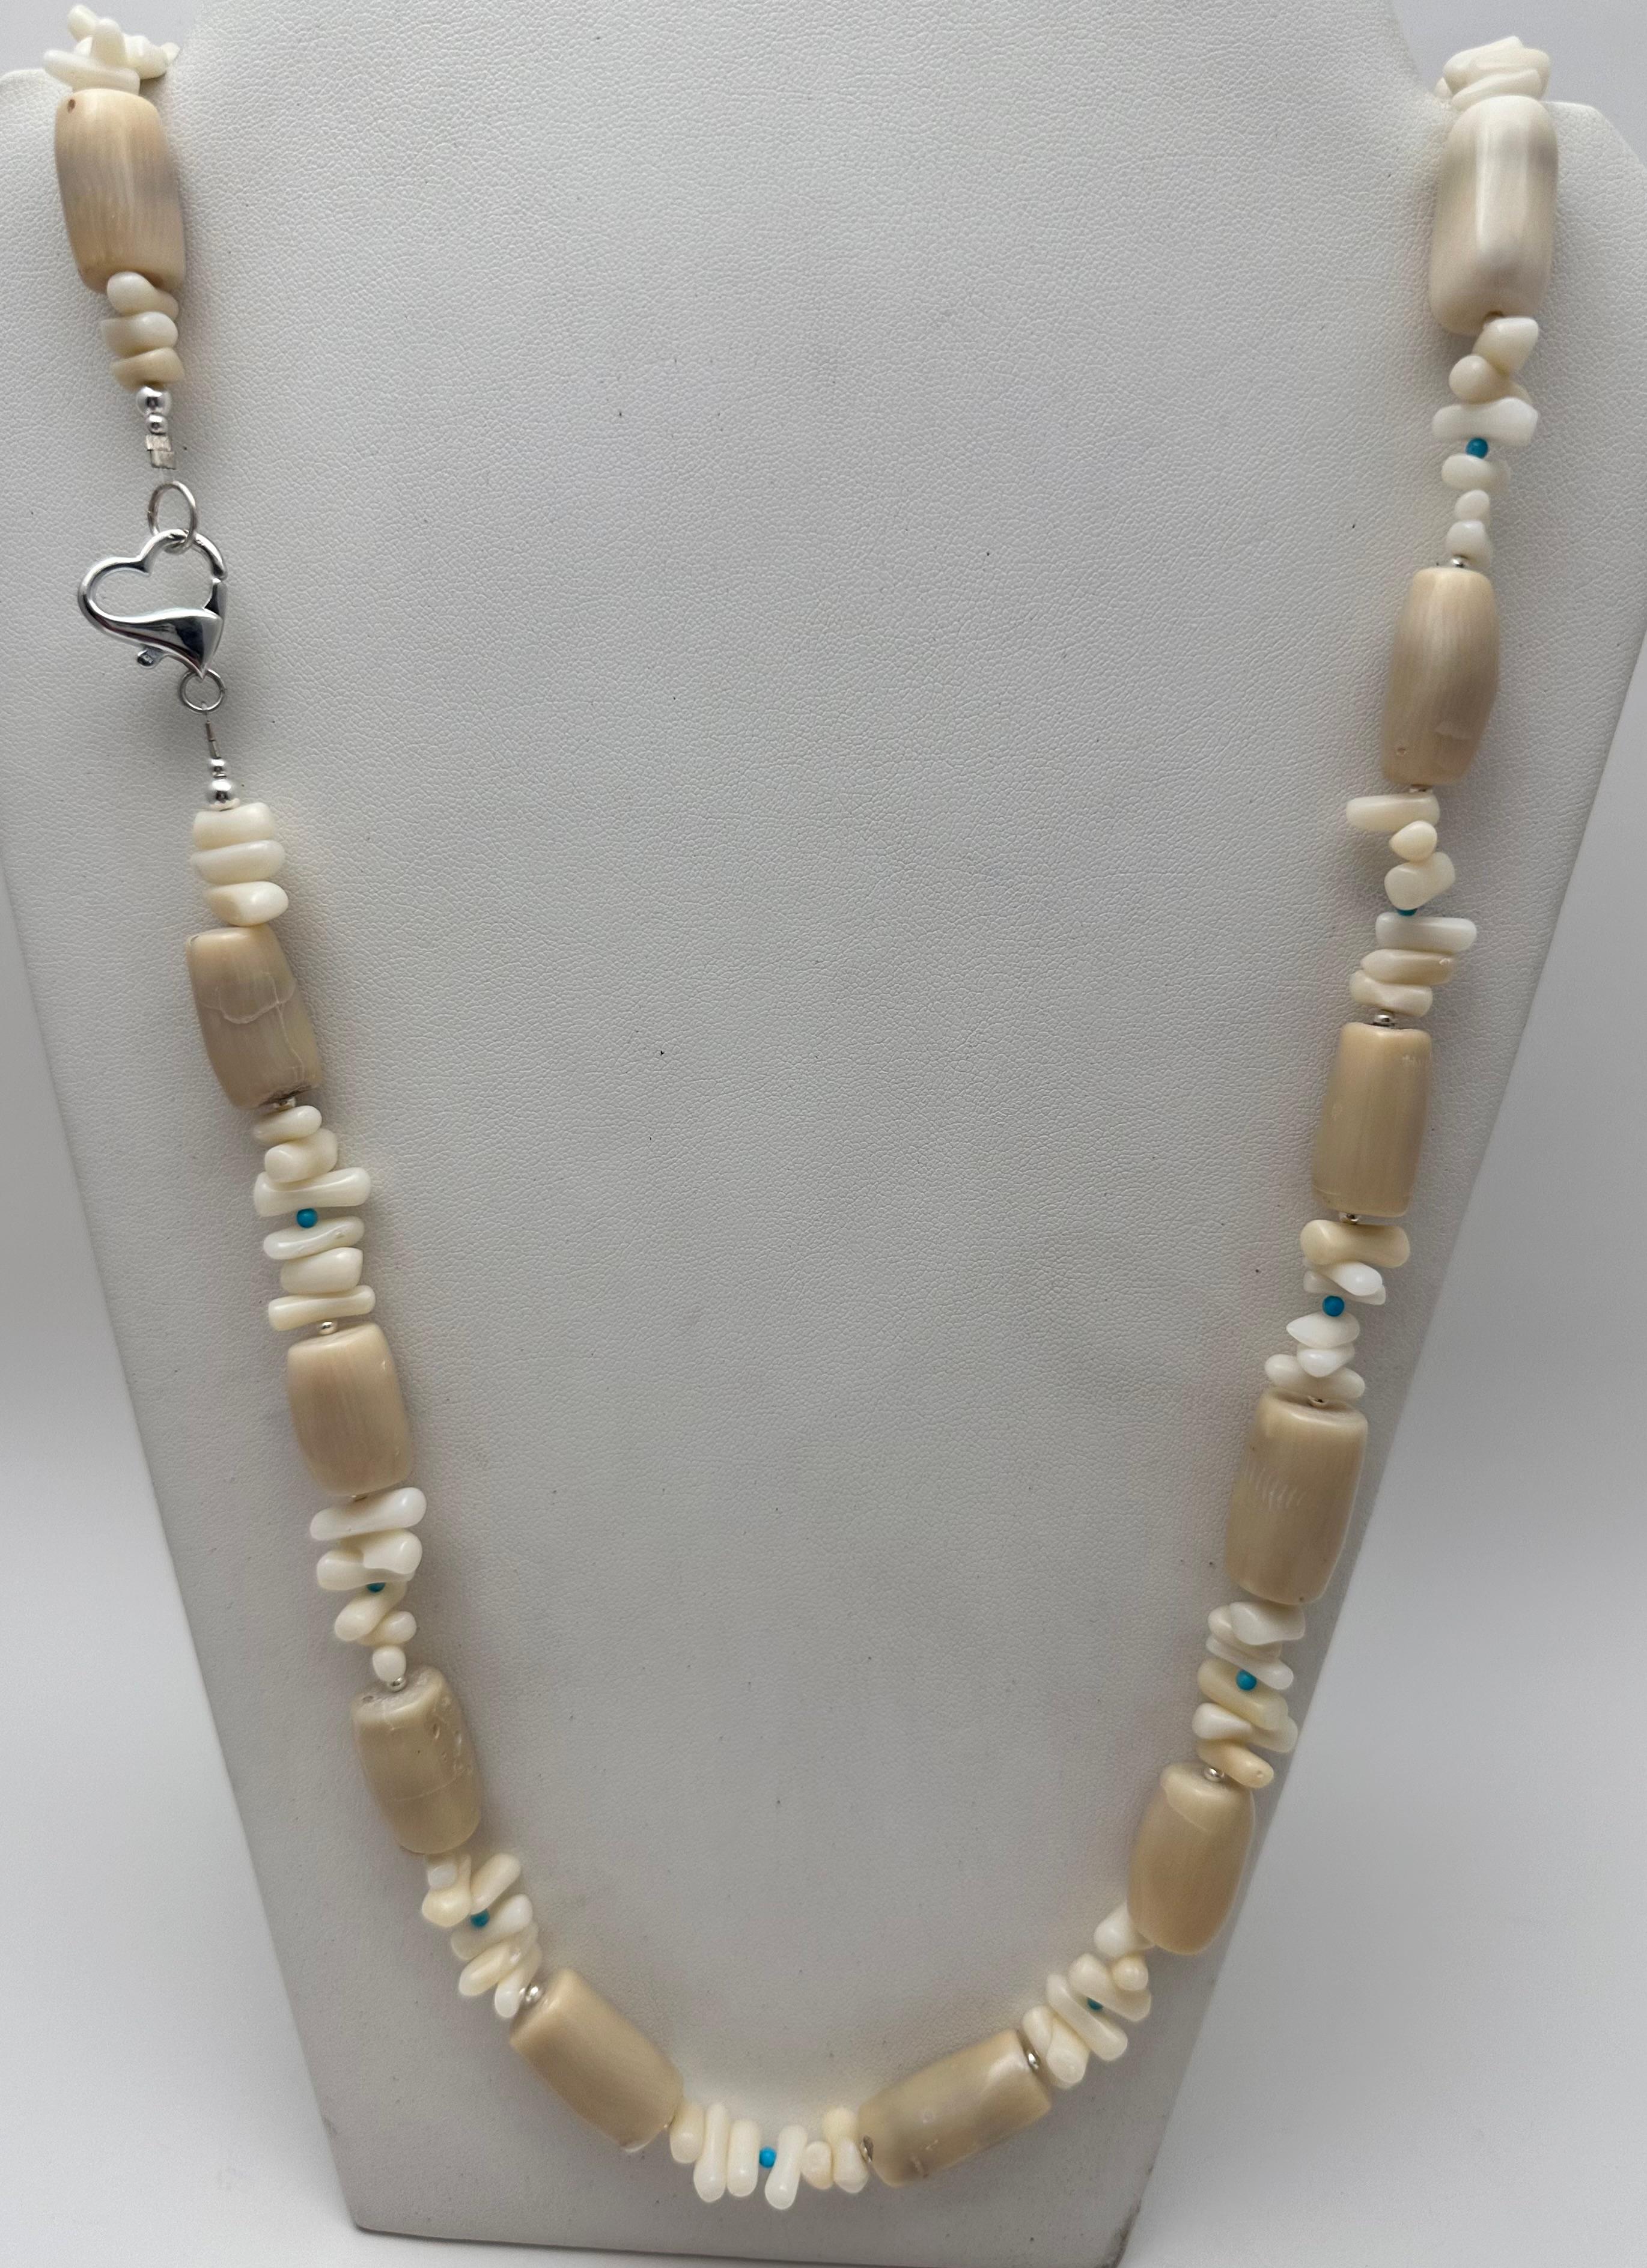 Diese atemberaubende Perlenkette ist ein einzigartiges, handgefertigtes Schmuckstück. Er ist aus hochwertigem 925er Sterlingsilber gefertigt und besteht aus hübschen beigen Perlen, die mit Korallen und Türkisen im Dornröschenschlaf verwoben sind. 